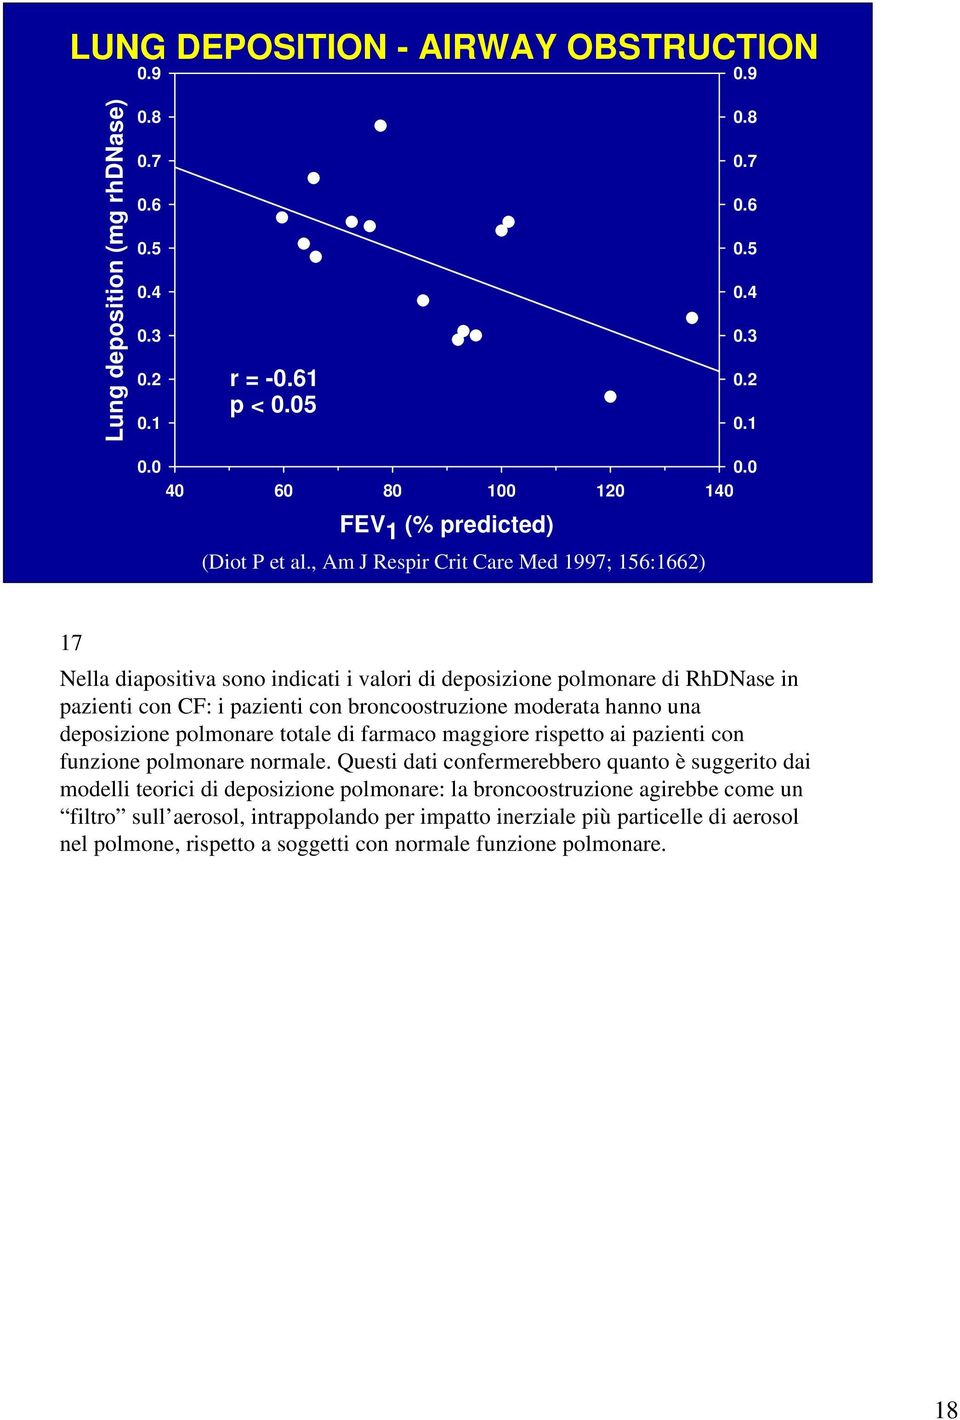 , Am J Respir Crit Care Med 1997; 156:1662) 17 Nella diapositiva sono indicati i valori di deposizione polmonare di RhDNase in pazienti con CF: i pazienti con broncoostruzione moderata hanno una